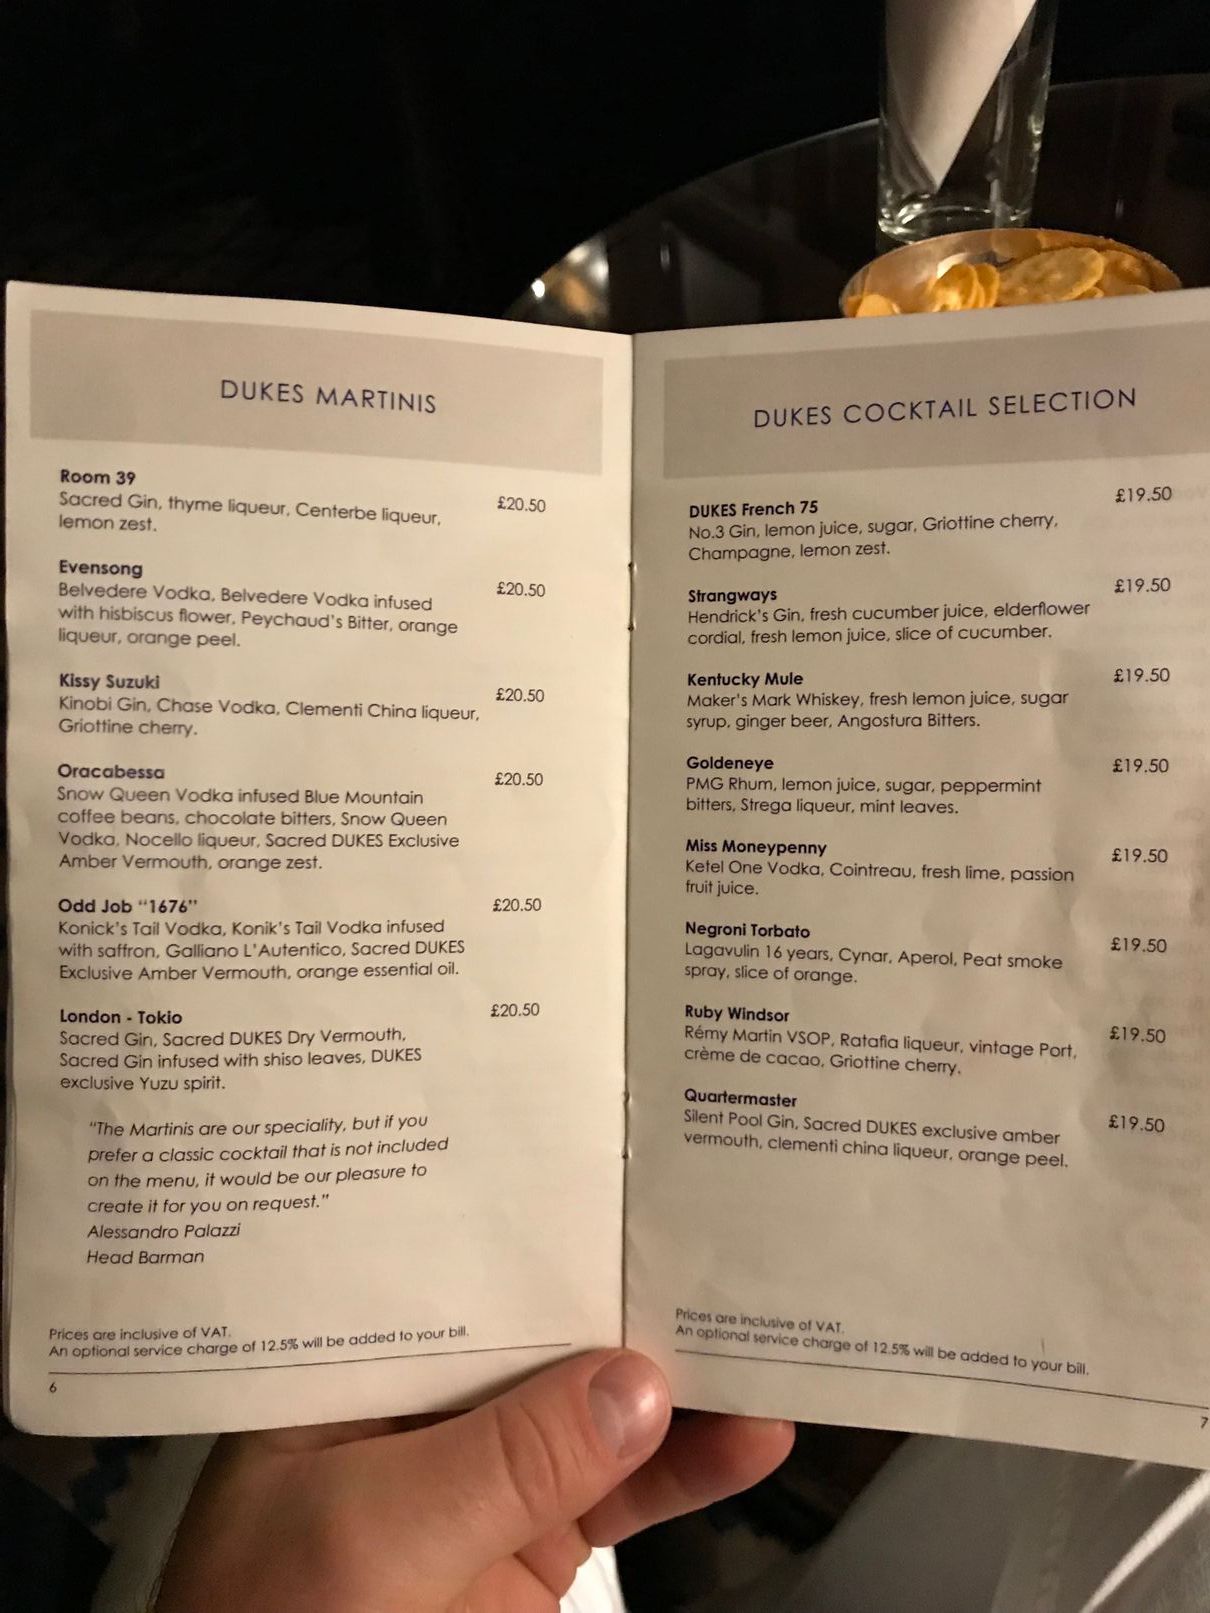 Cocktail and martini menu at Dukes Bar London